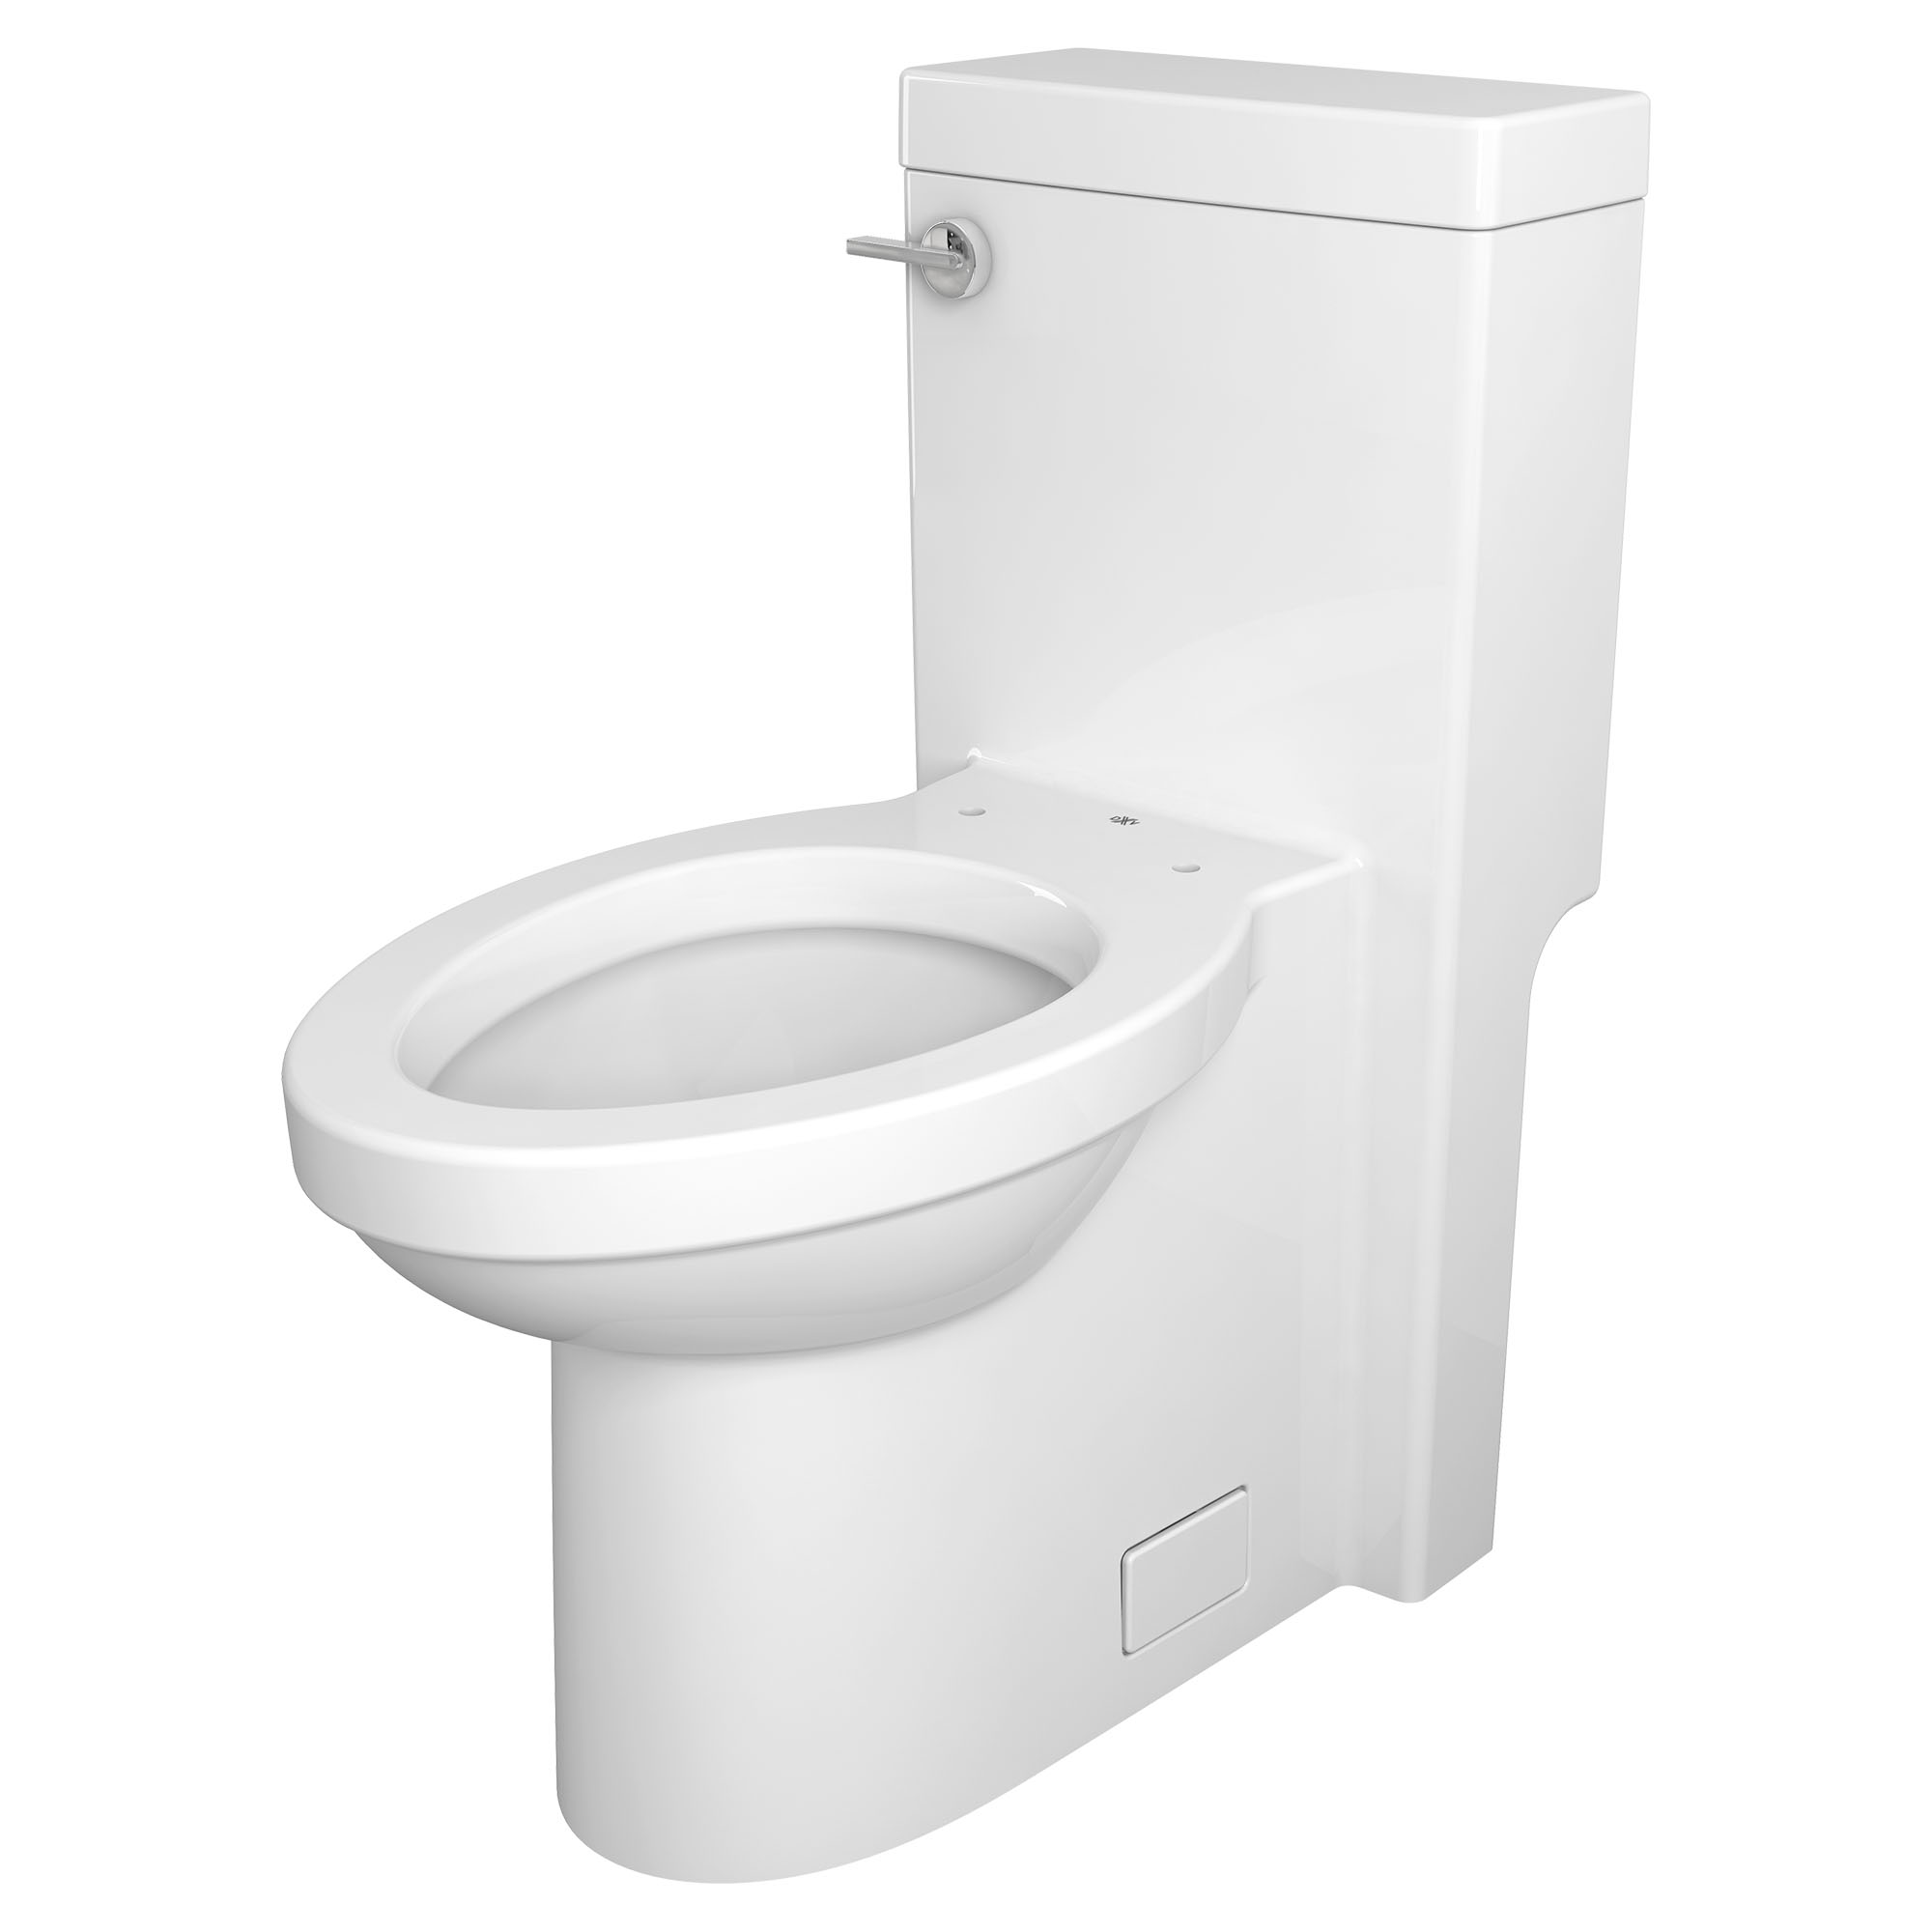 Toilette Cossu monopièce à cuvette allongée à hauteur de chaise avec siège